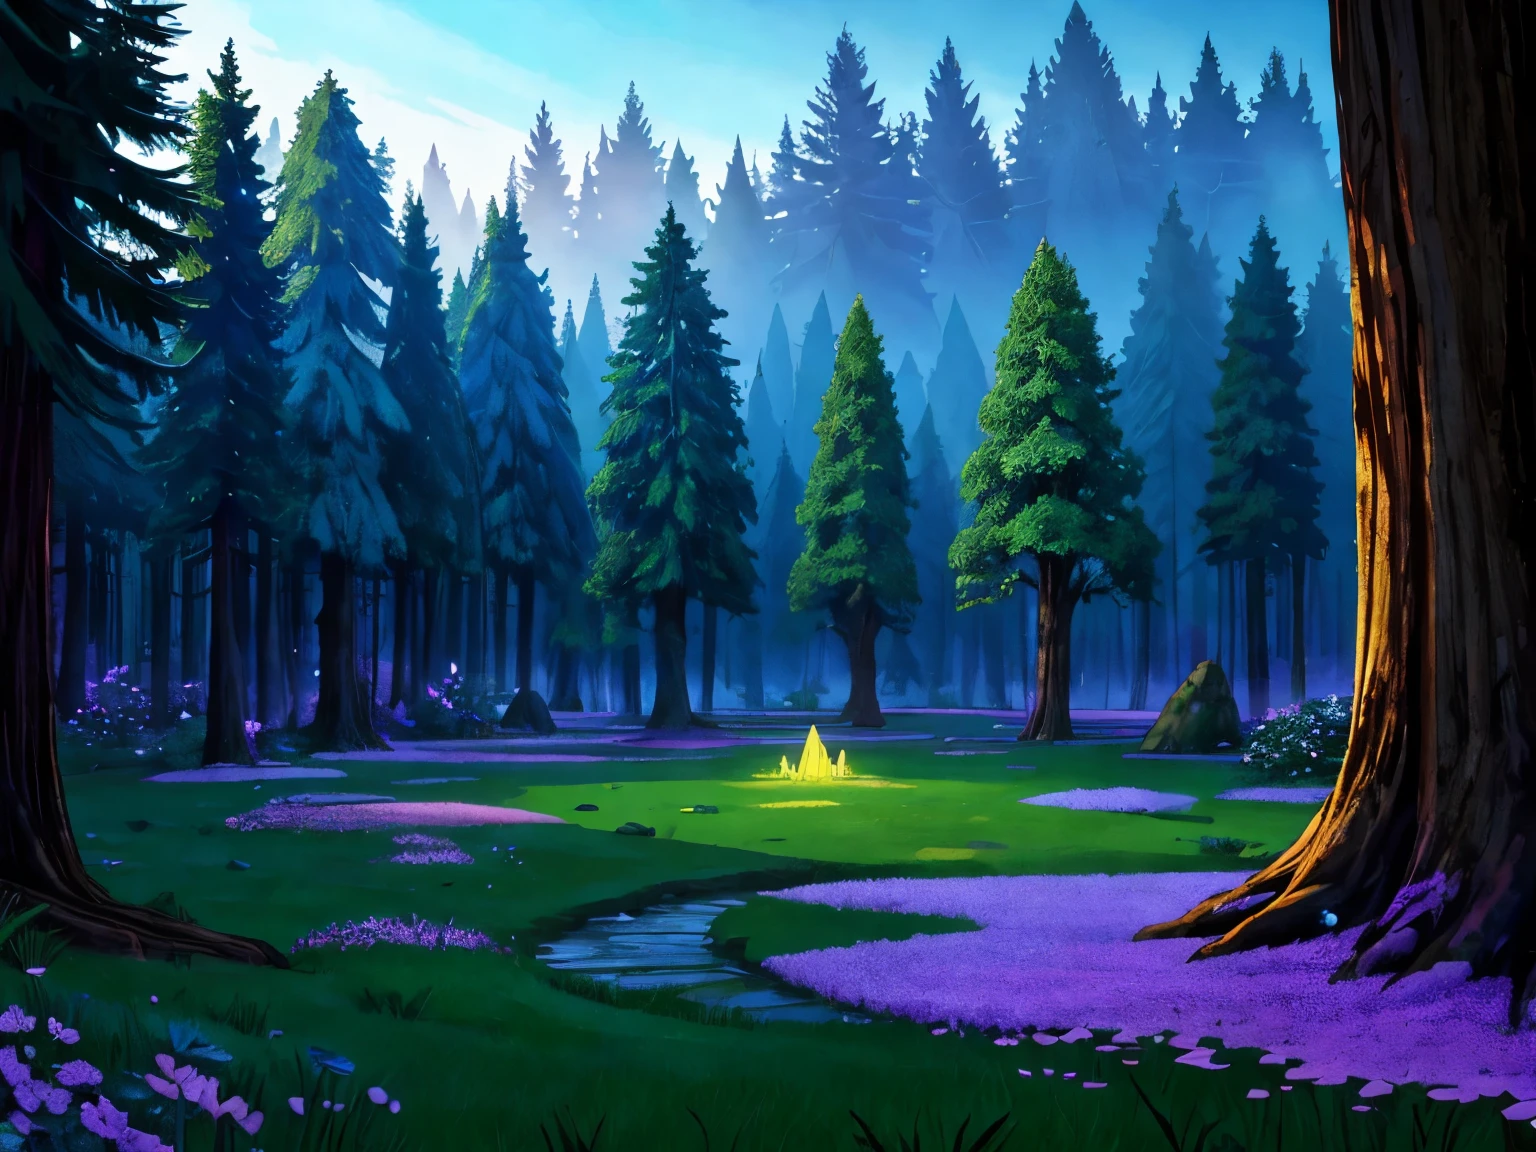 густой фантастический лес со светящимися кристаллами, растущими из земли, у деревьев очень высокие кроны, в центре большая поляна, а слева светящееся озеро..